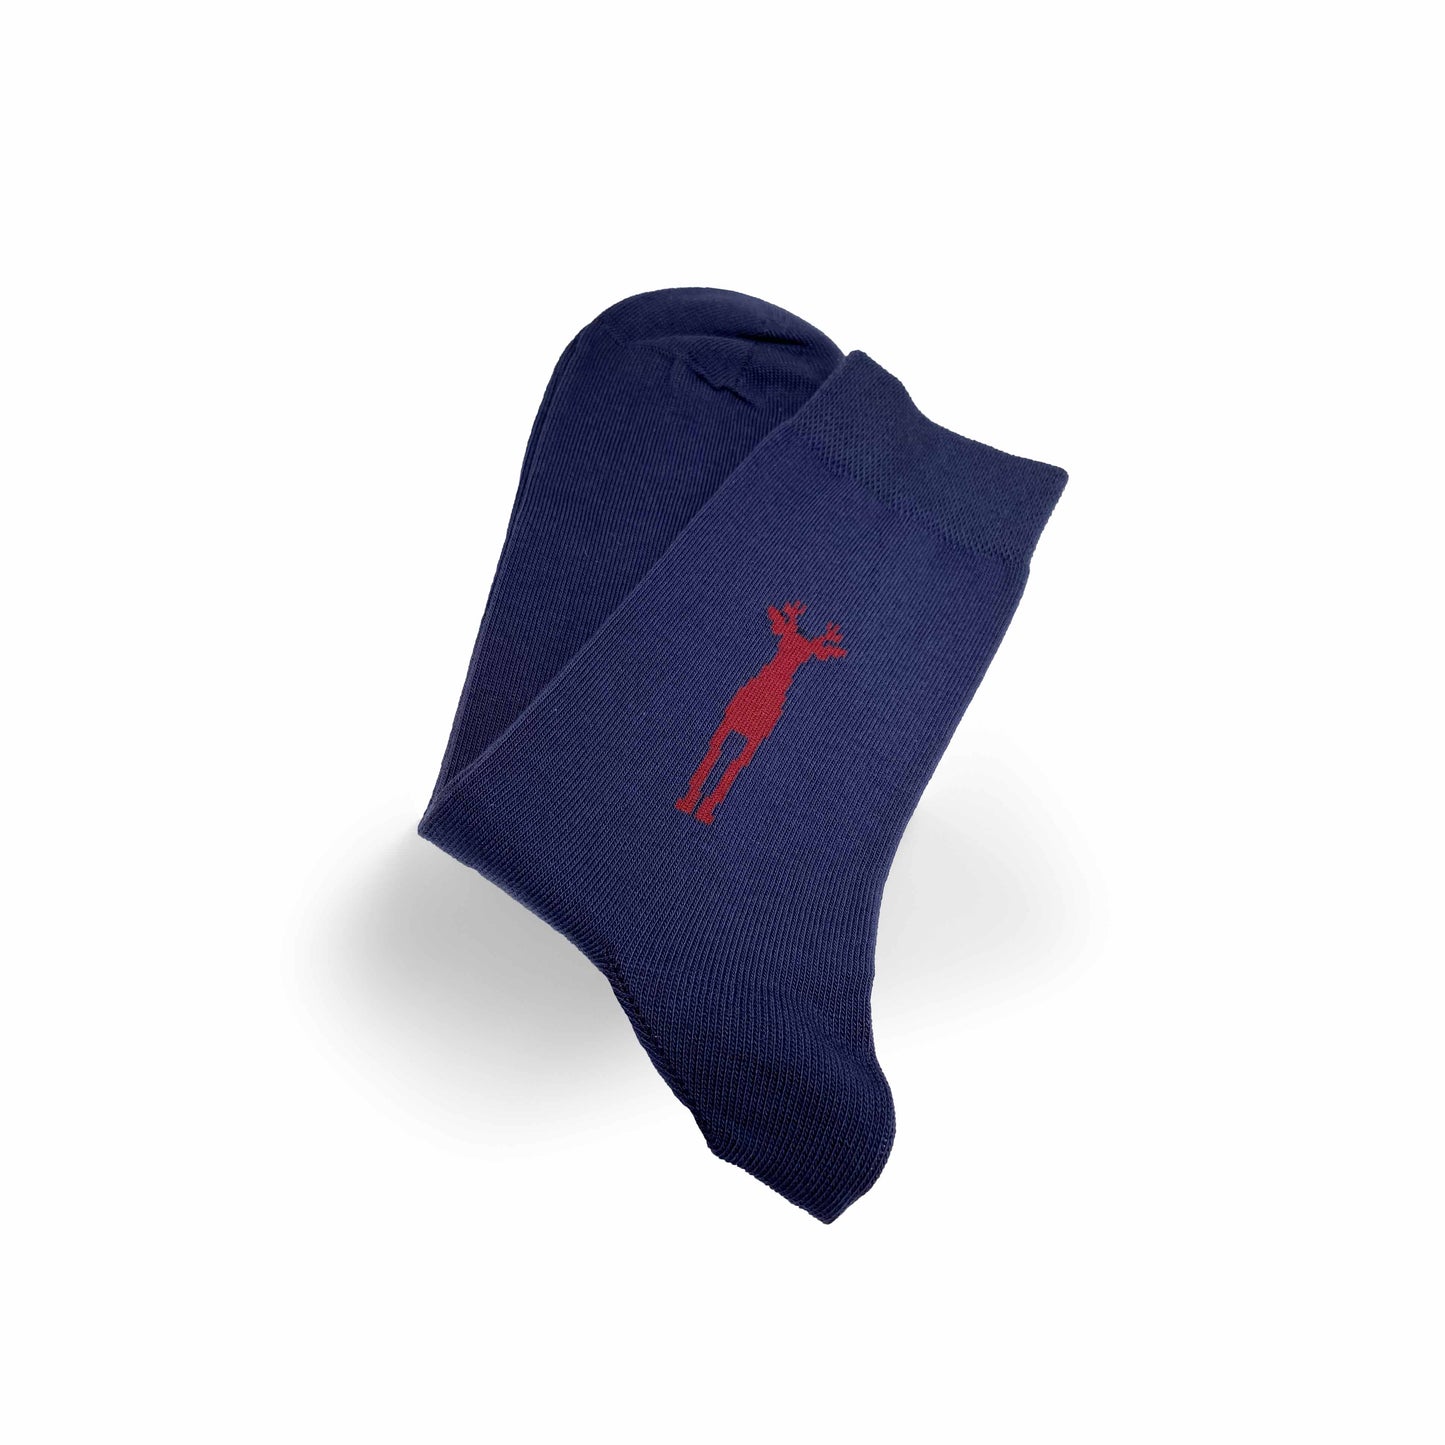 
                  
                    Freisteller von Bockfieber Socken in blau mit rotem Bock. Socken sind zusammen geklappt. 
                  
                